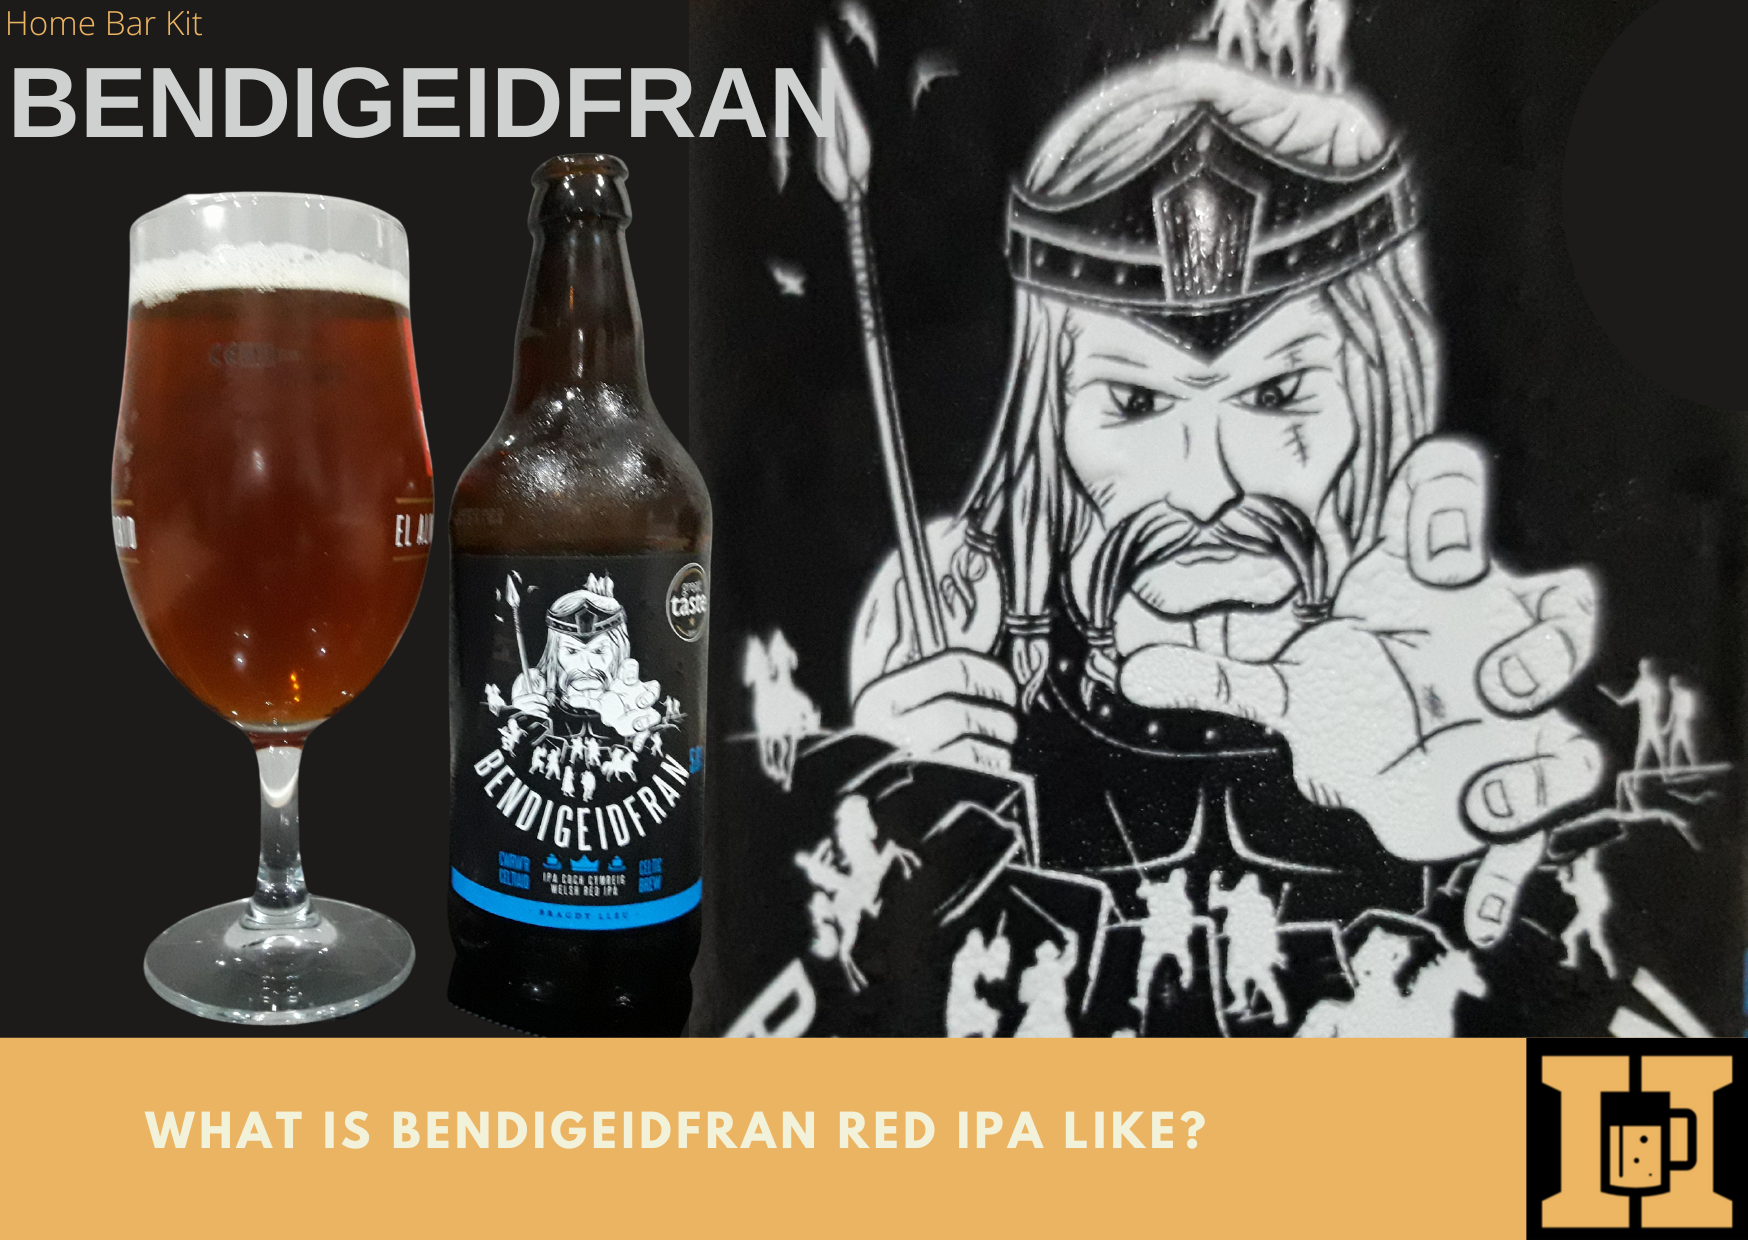 What Is Bendigeidfran Red IPA Like